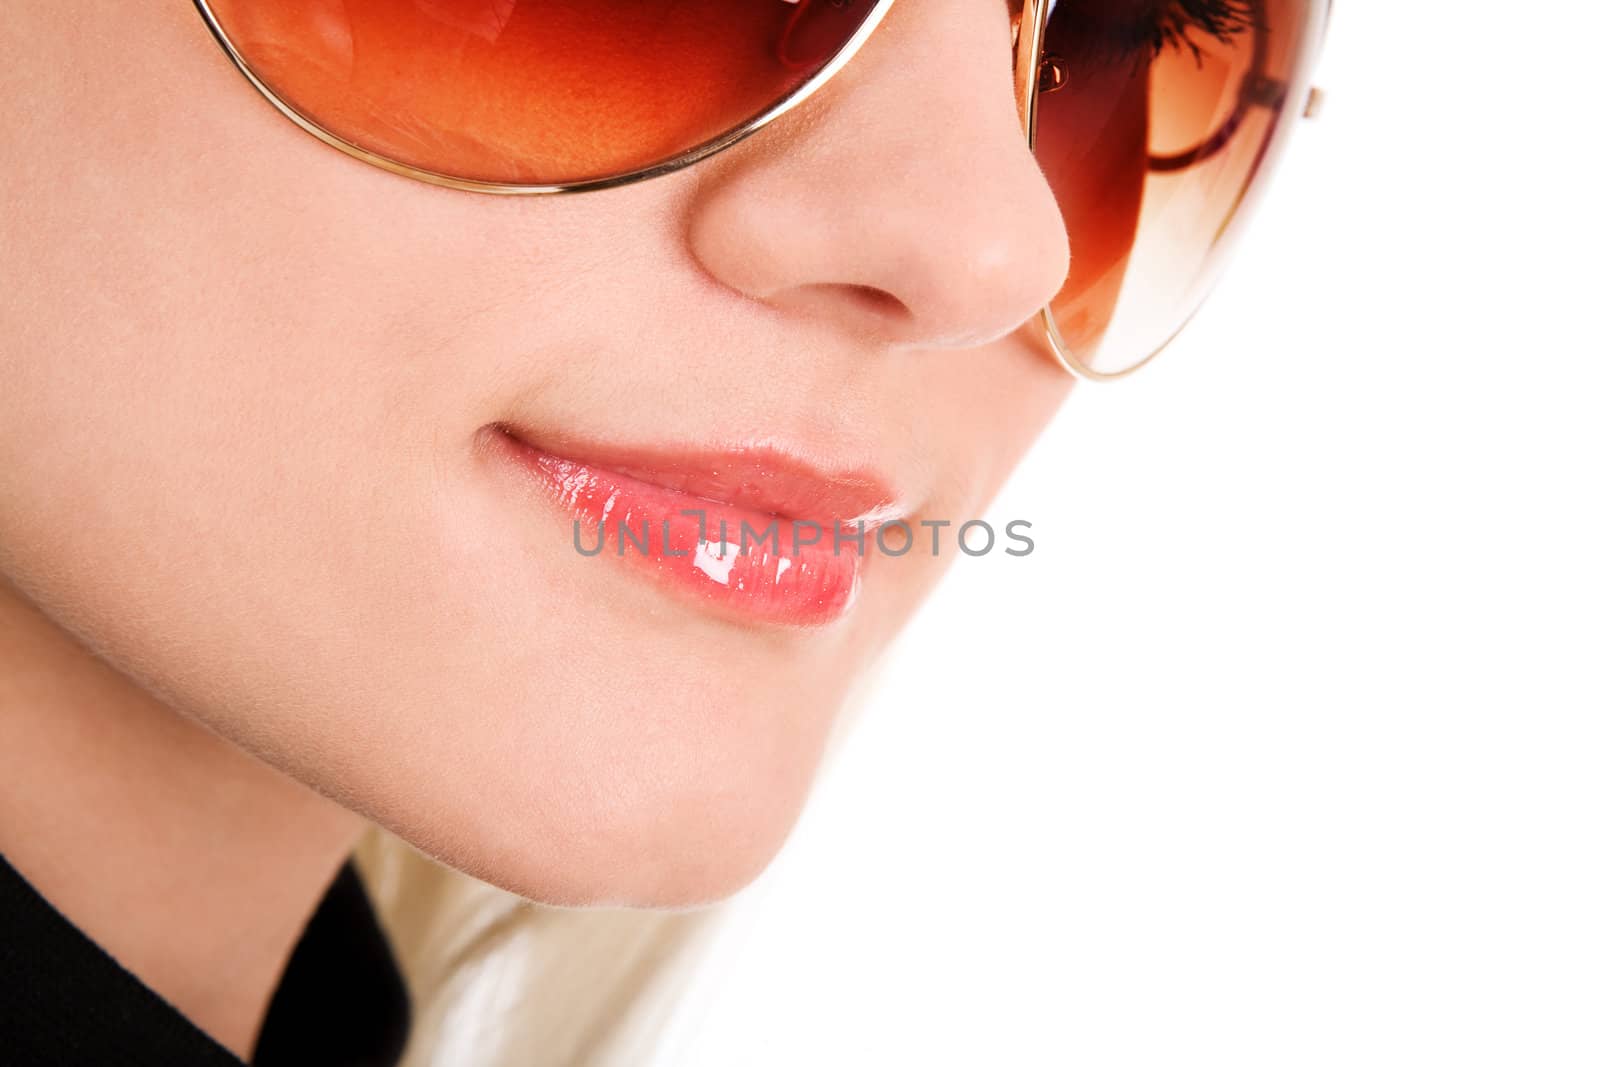 girl in sunglasses by vsurkov